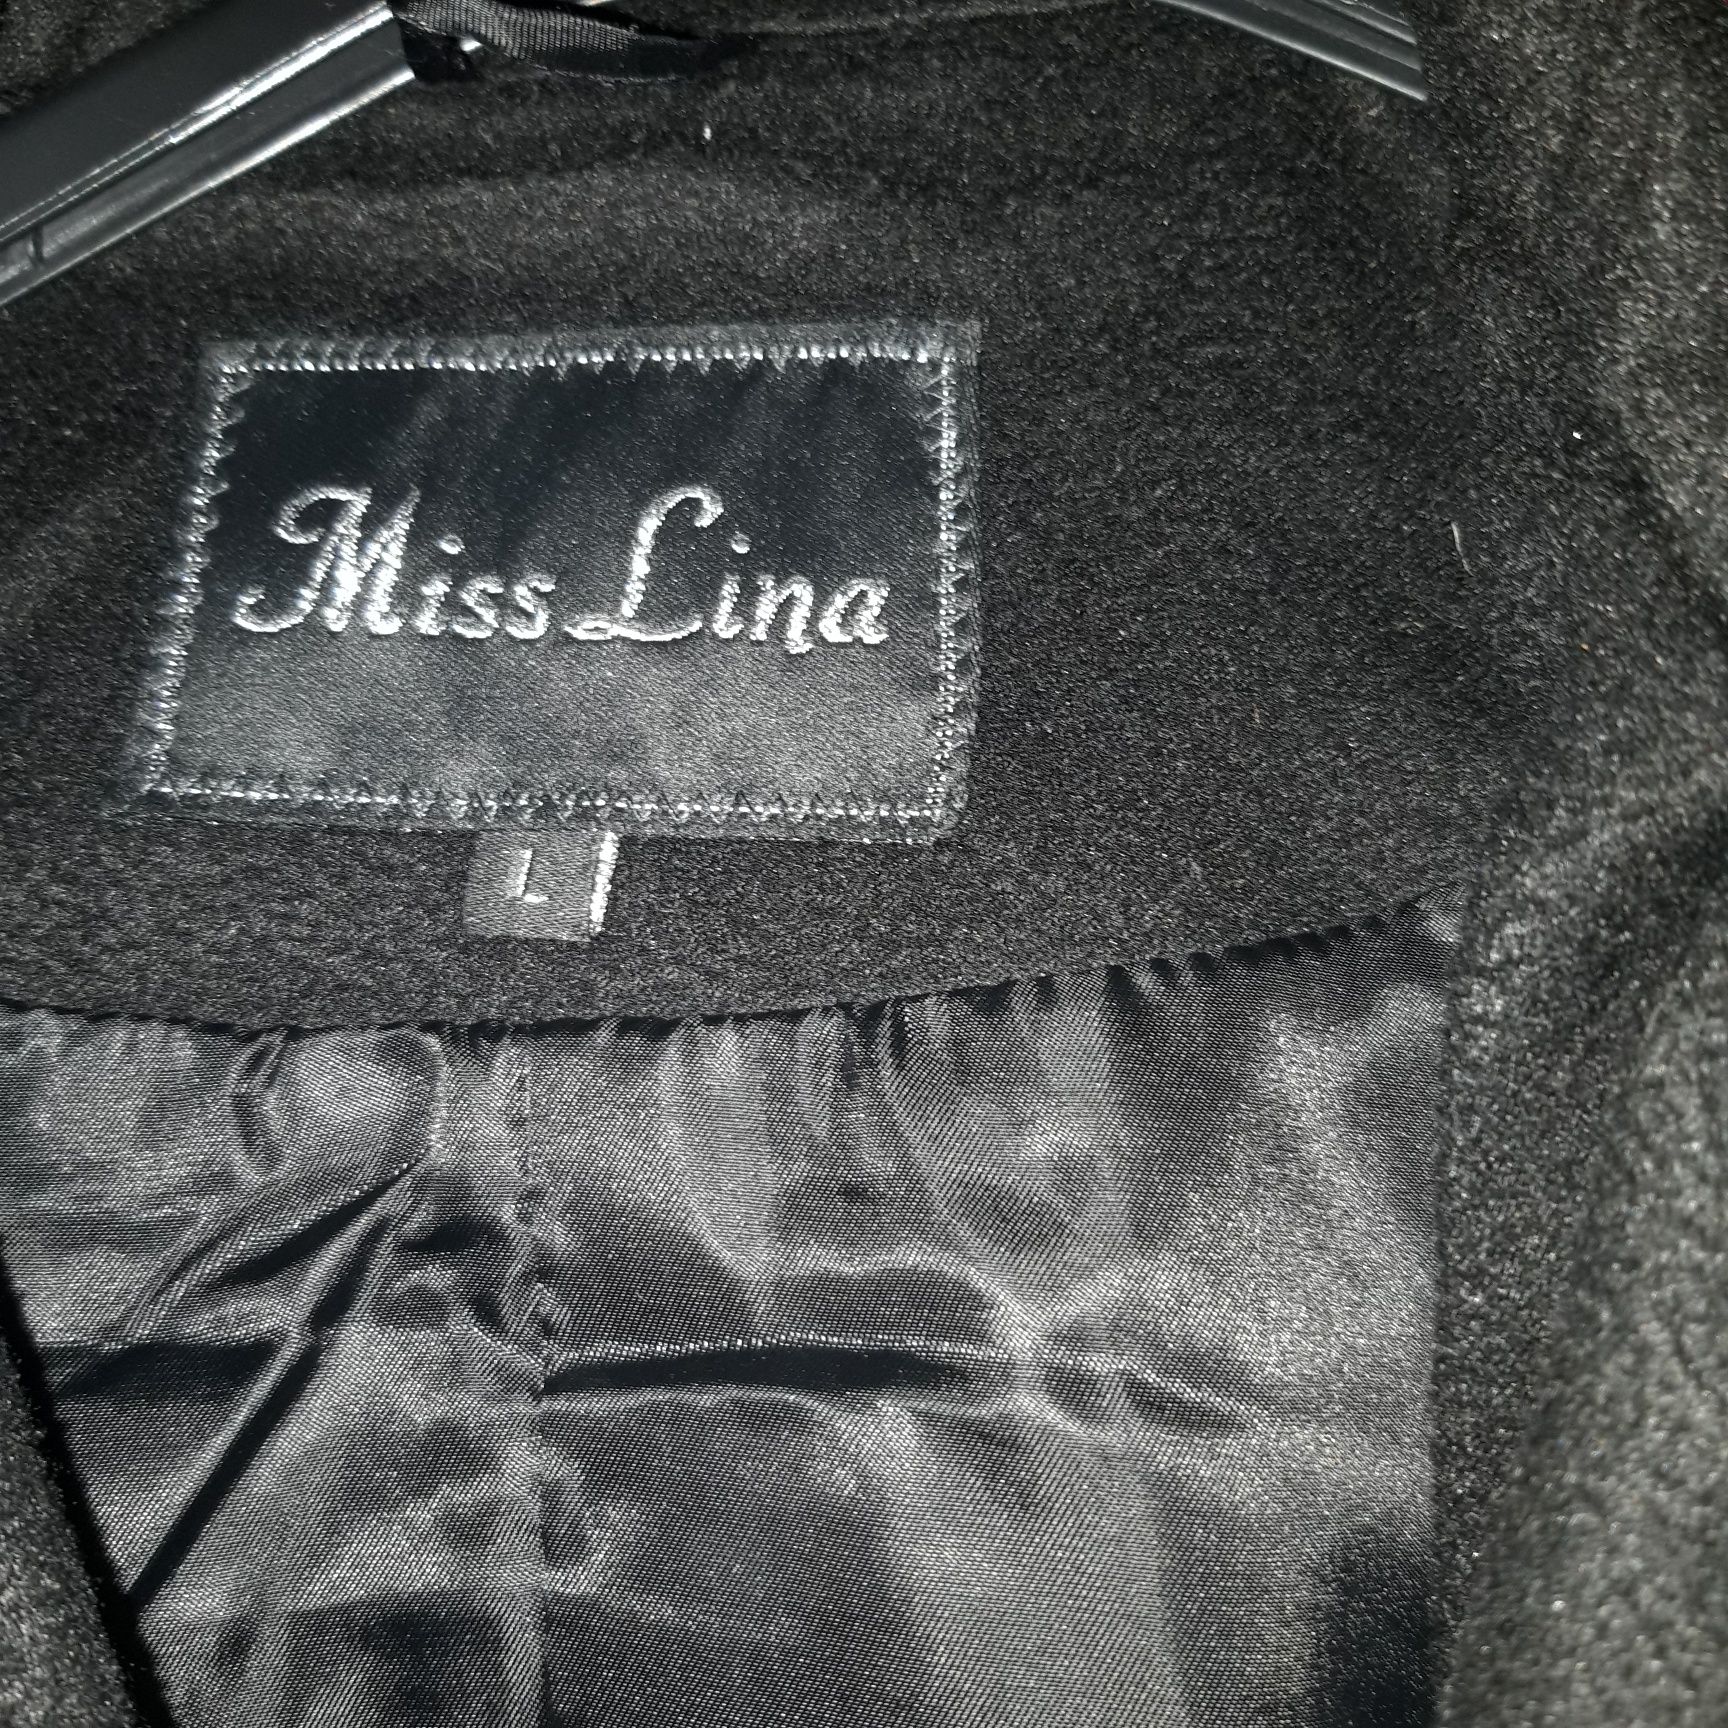 Płaszcz damski Miss Lina rozmiar L .Stan idealny